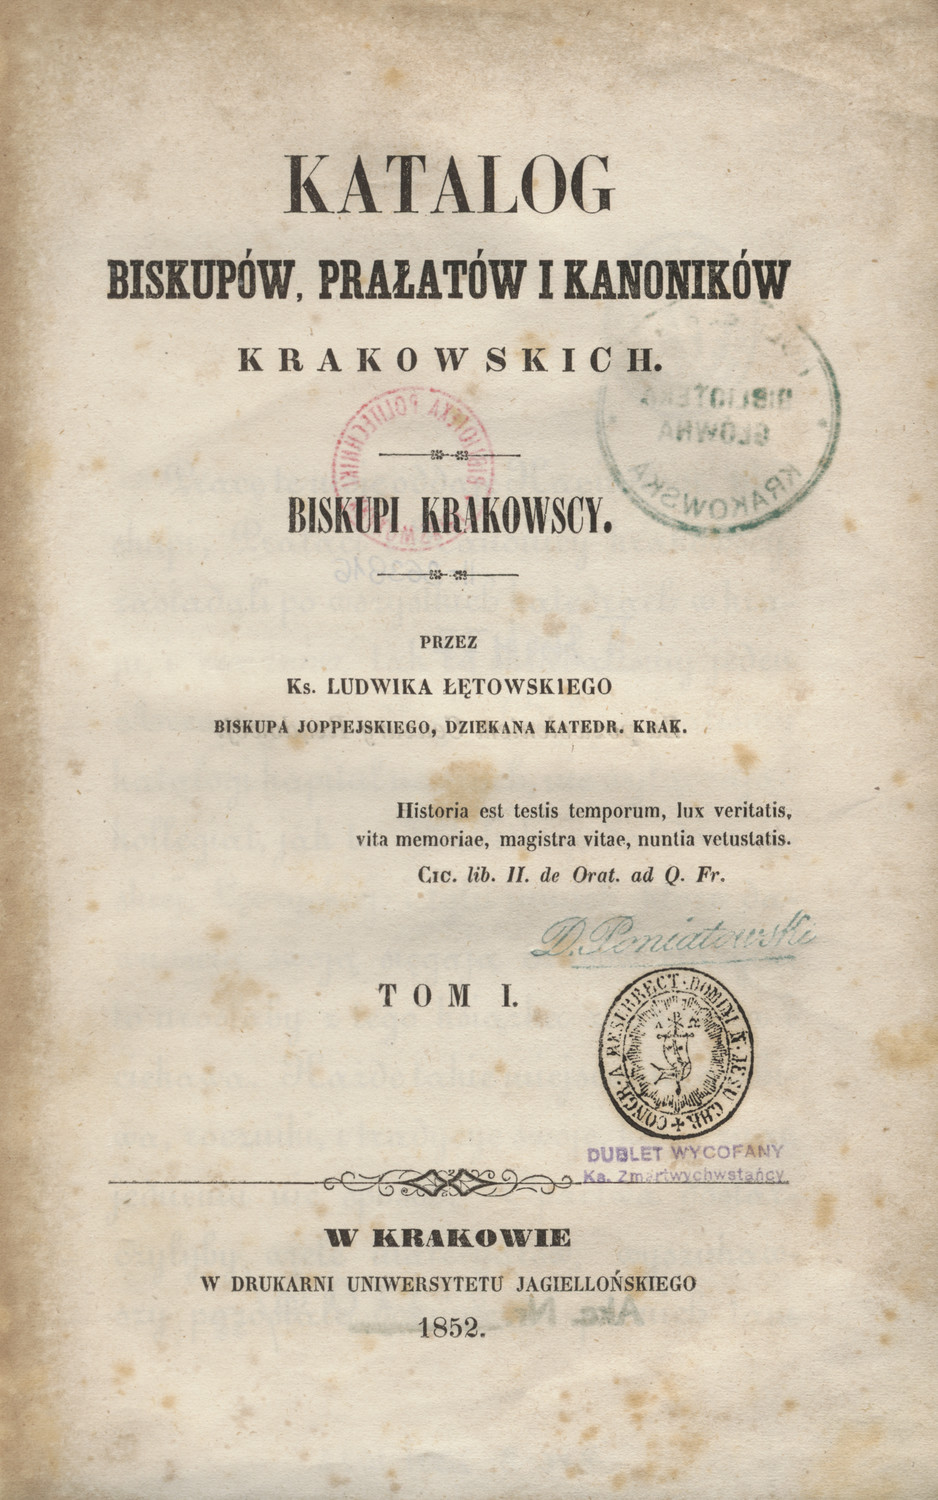 Katalog biskupów, prałatów i kanoników krakowskich. T. 1, Biskupi krakowscy